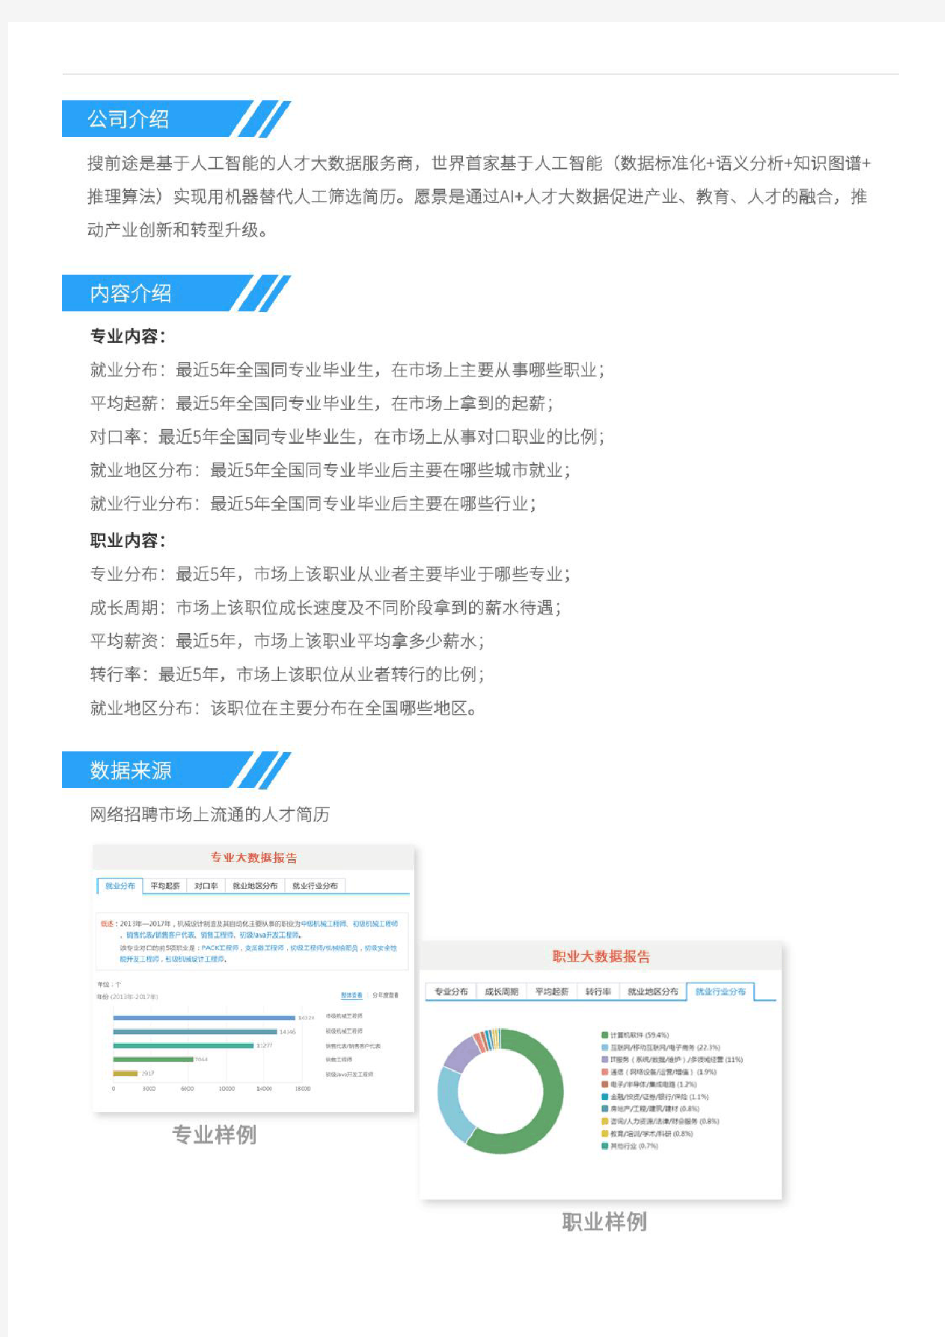 2013-2017年上海财经大学经济学类专业毕业生就业大数据报告